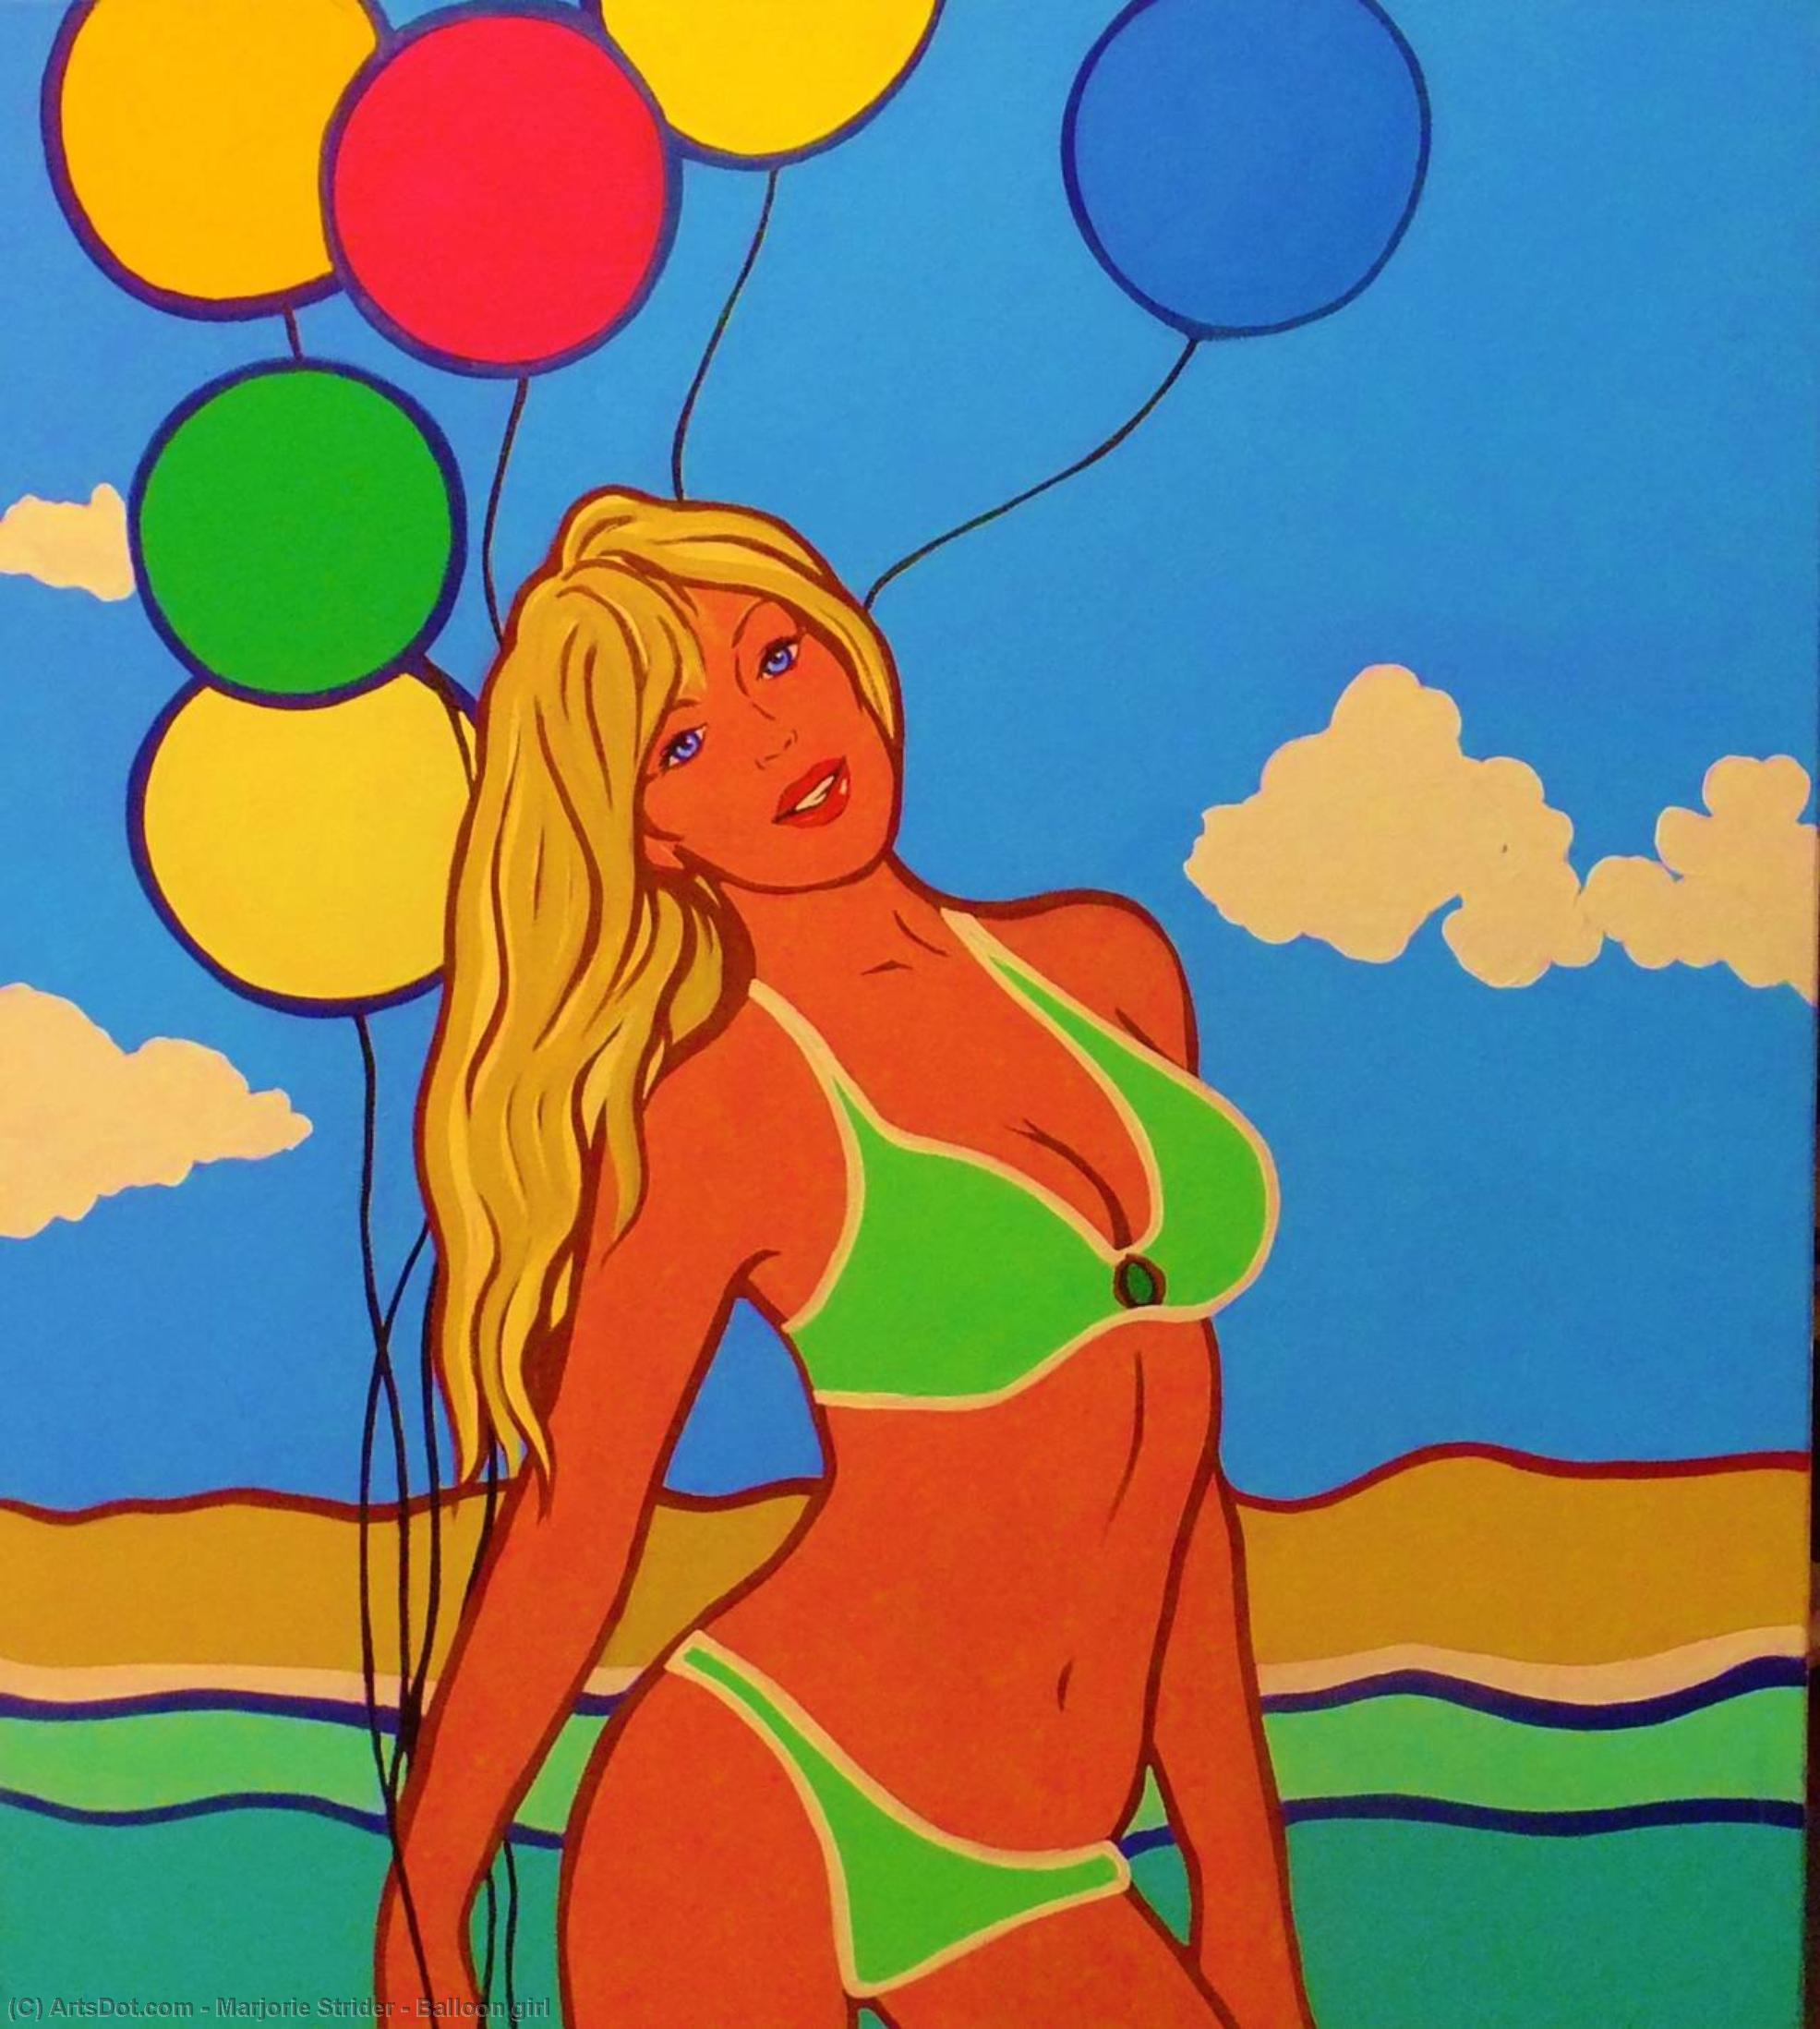 Wikoo.org - موسوعة الفنون الجميلة - اللوحة، العمل الفني Marjorie Strider - Balloon girl